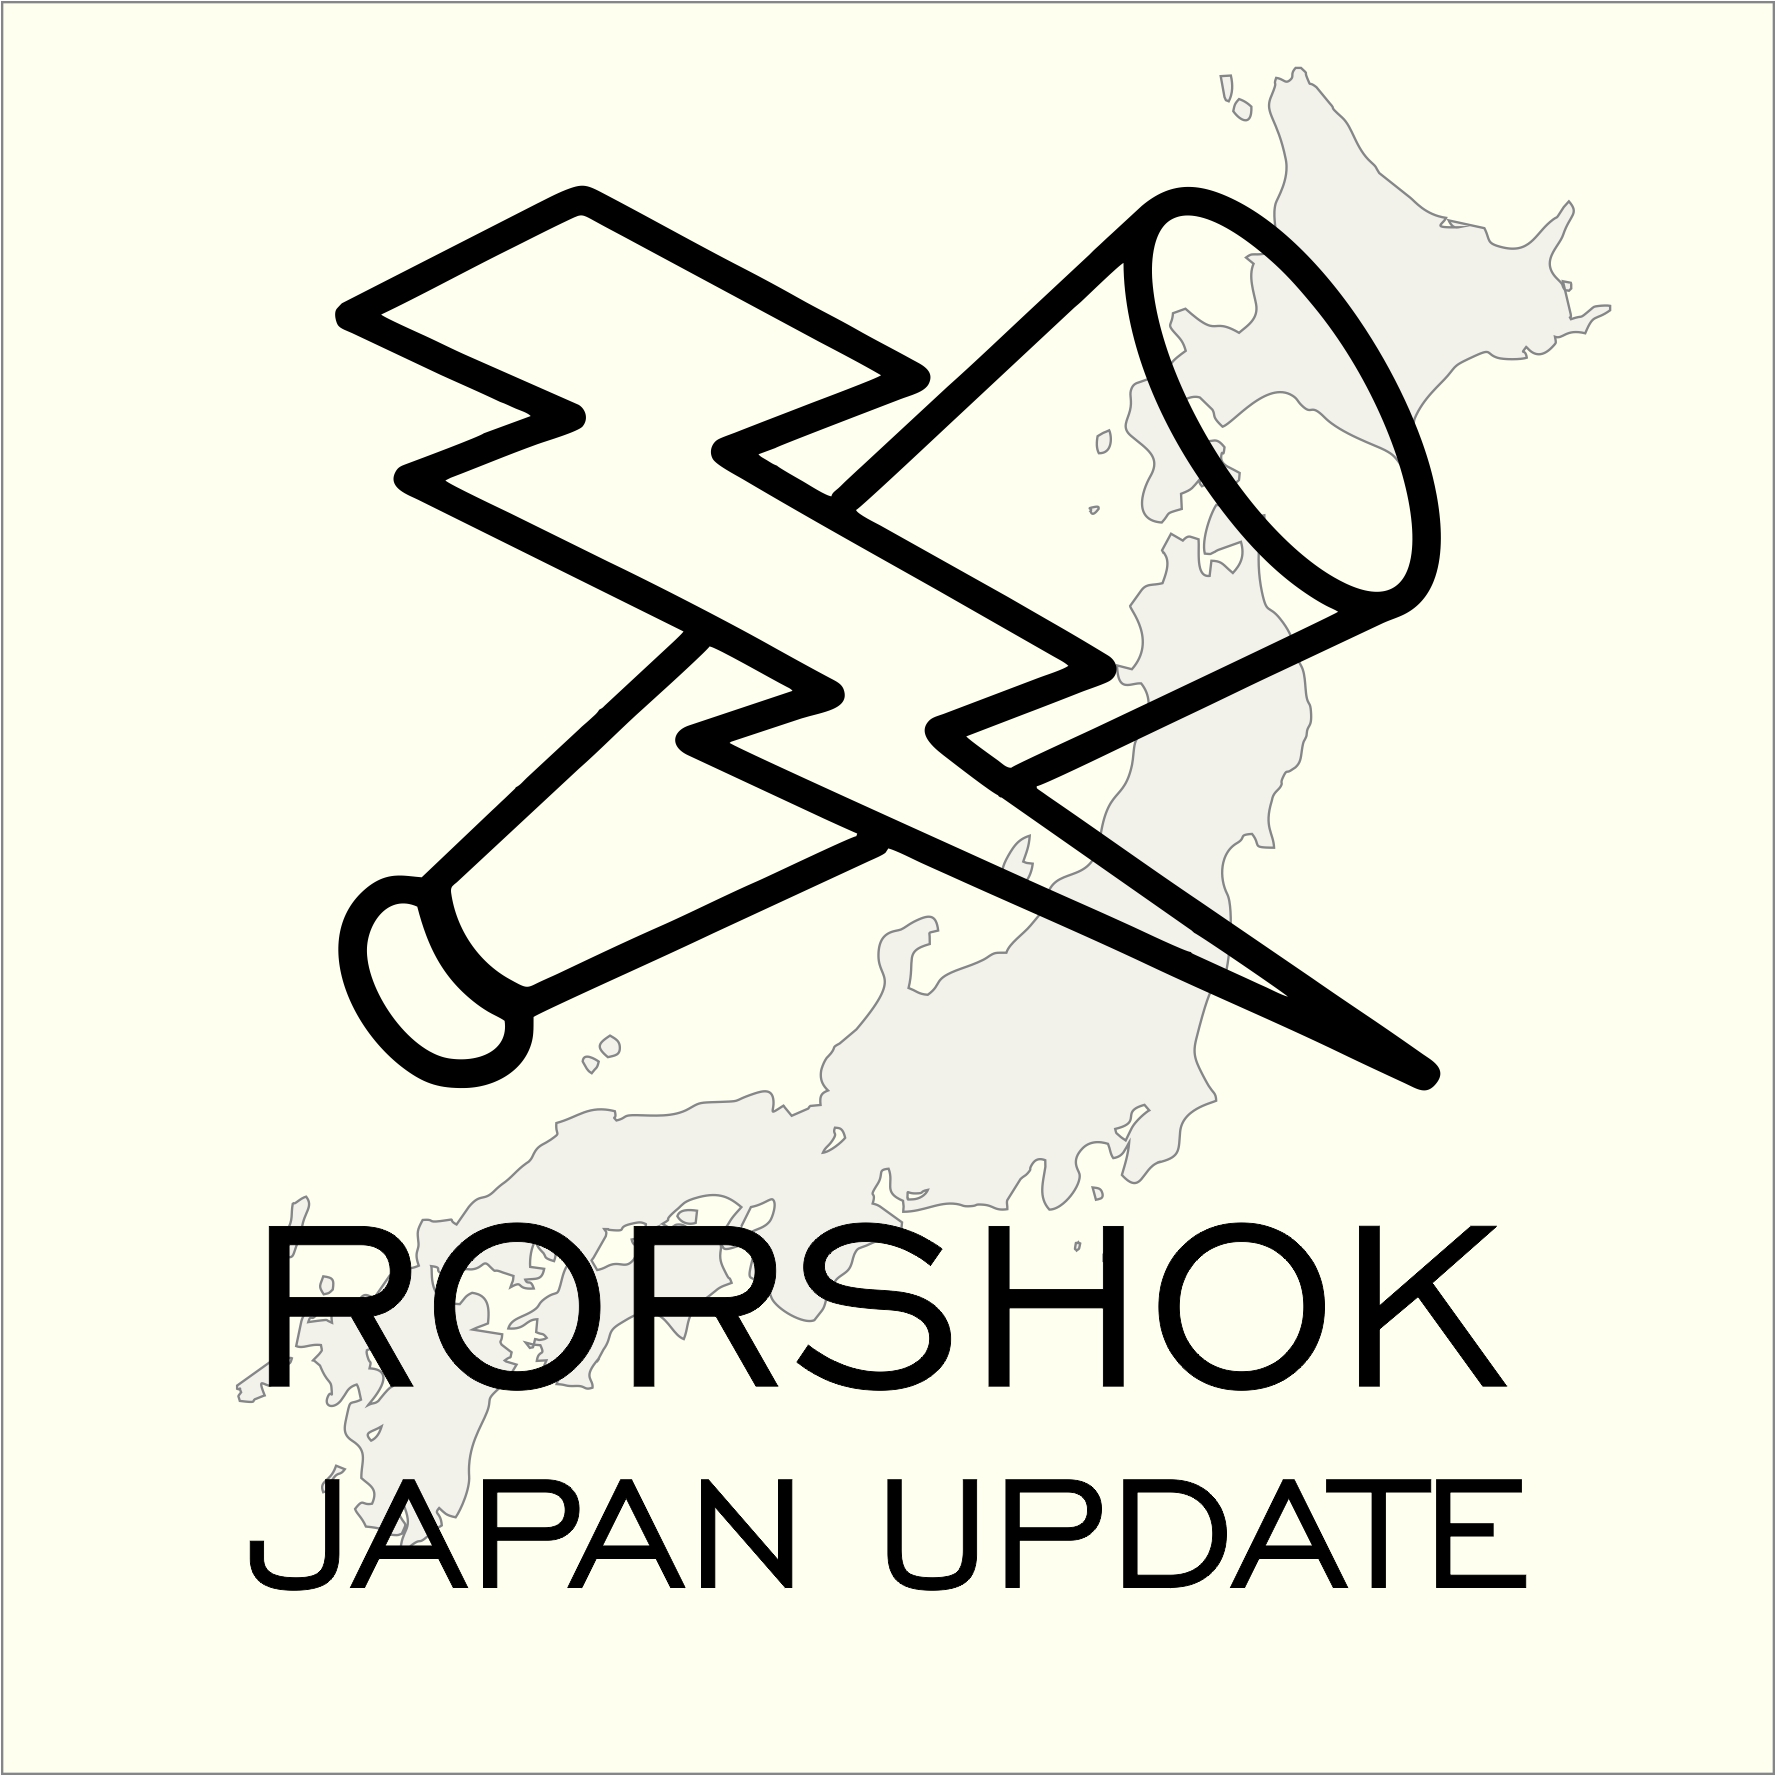 Show artwork for Rorshok Japan Update